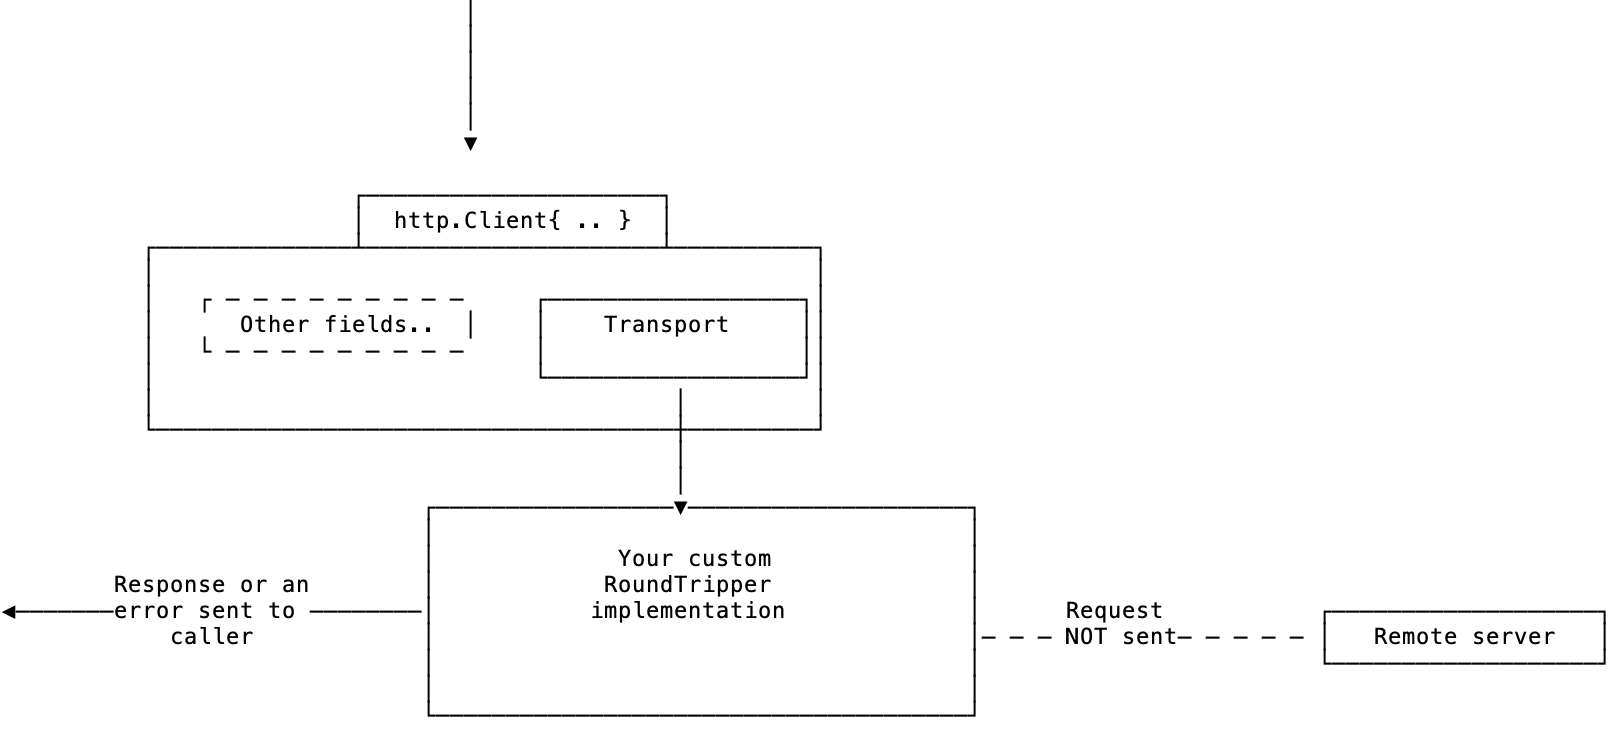 Custom RoundTripper implementation returning static responses